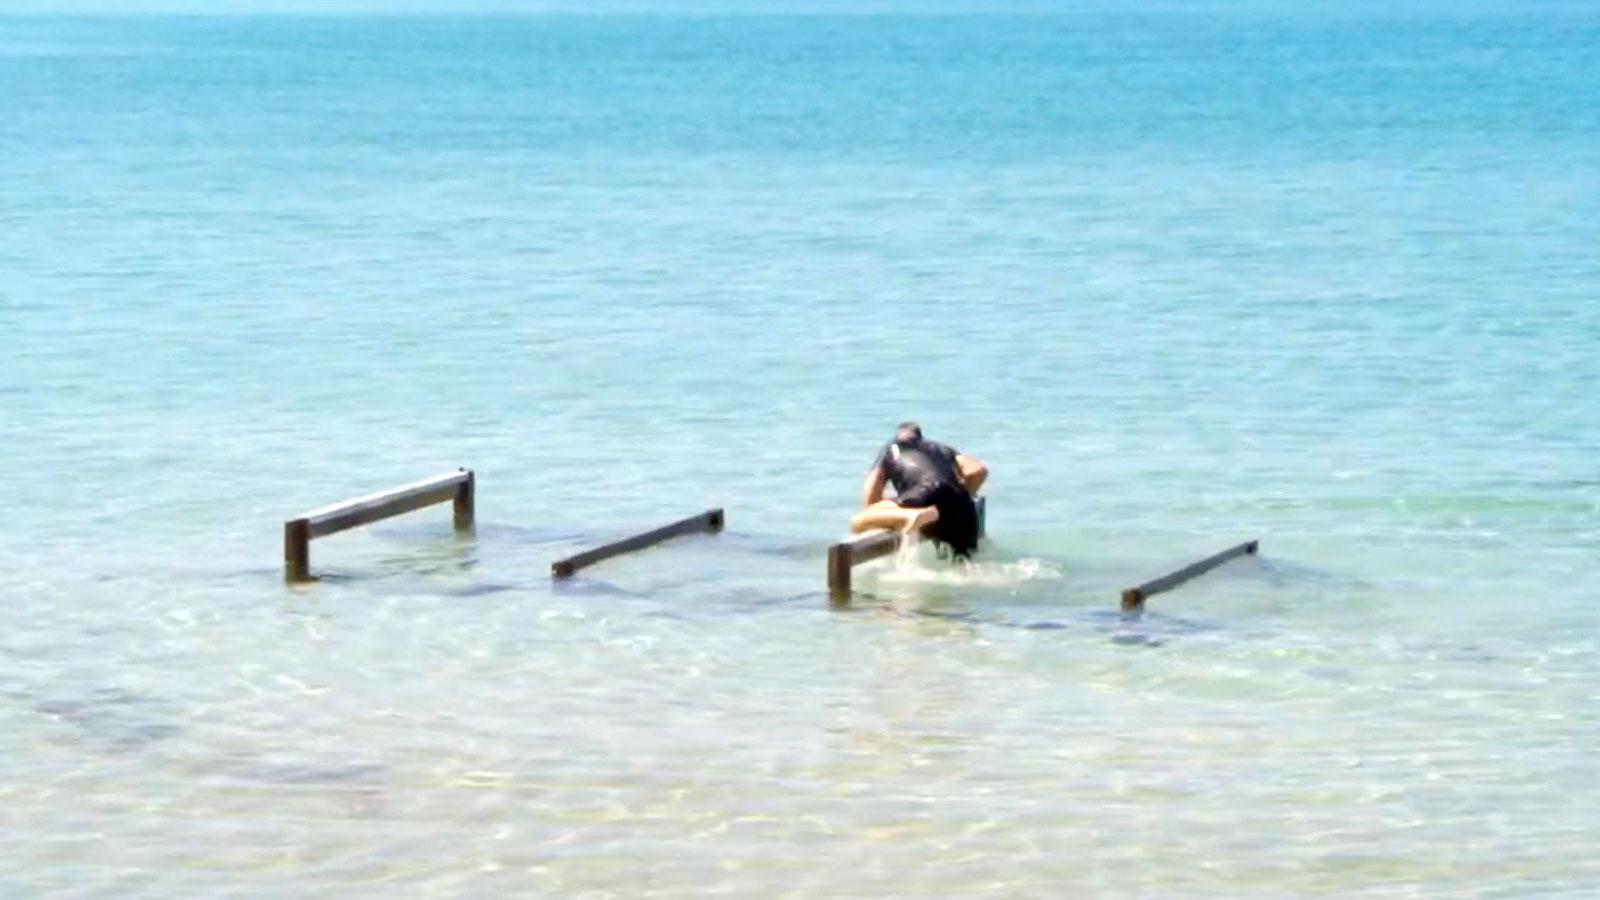 Tommy Salo ohjälpligt sist i grenen Jubelidioten, där det gäller att ta sig över och under hinder ute i vattnet.